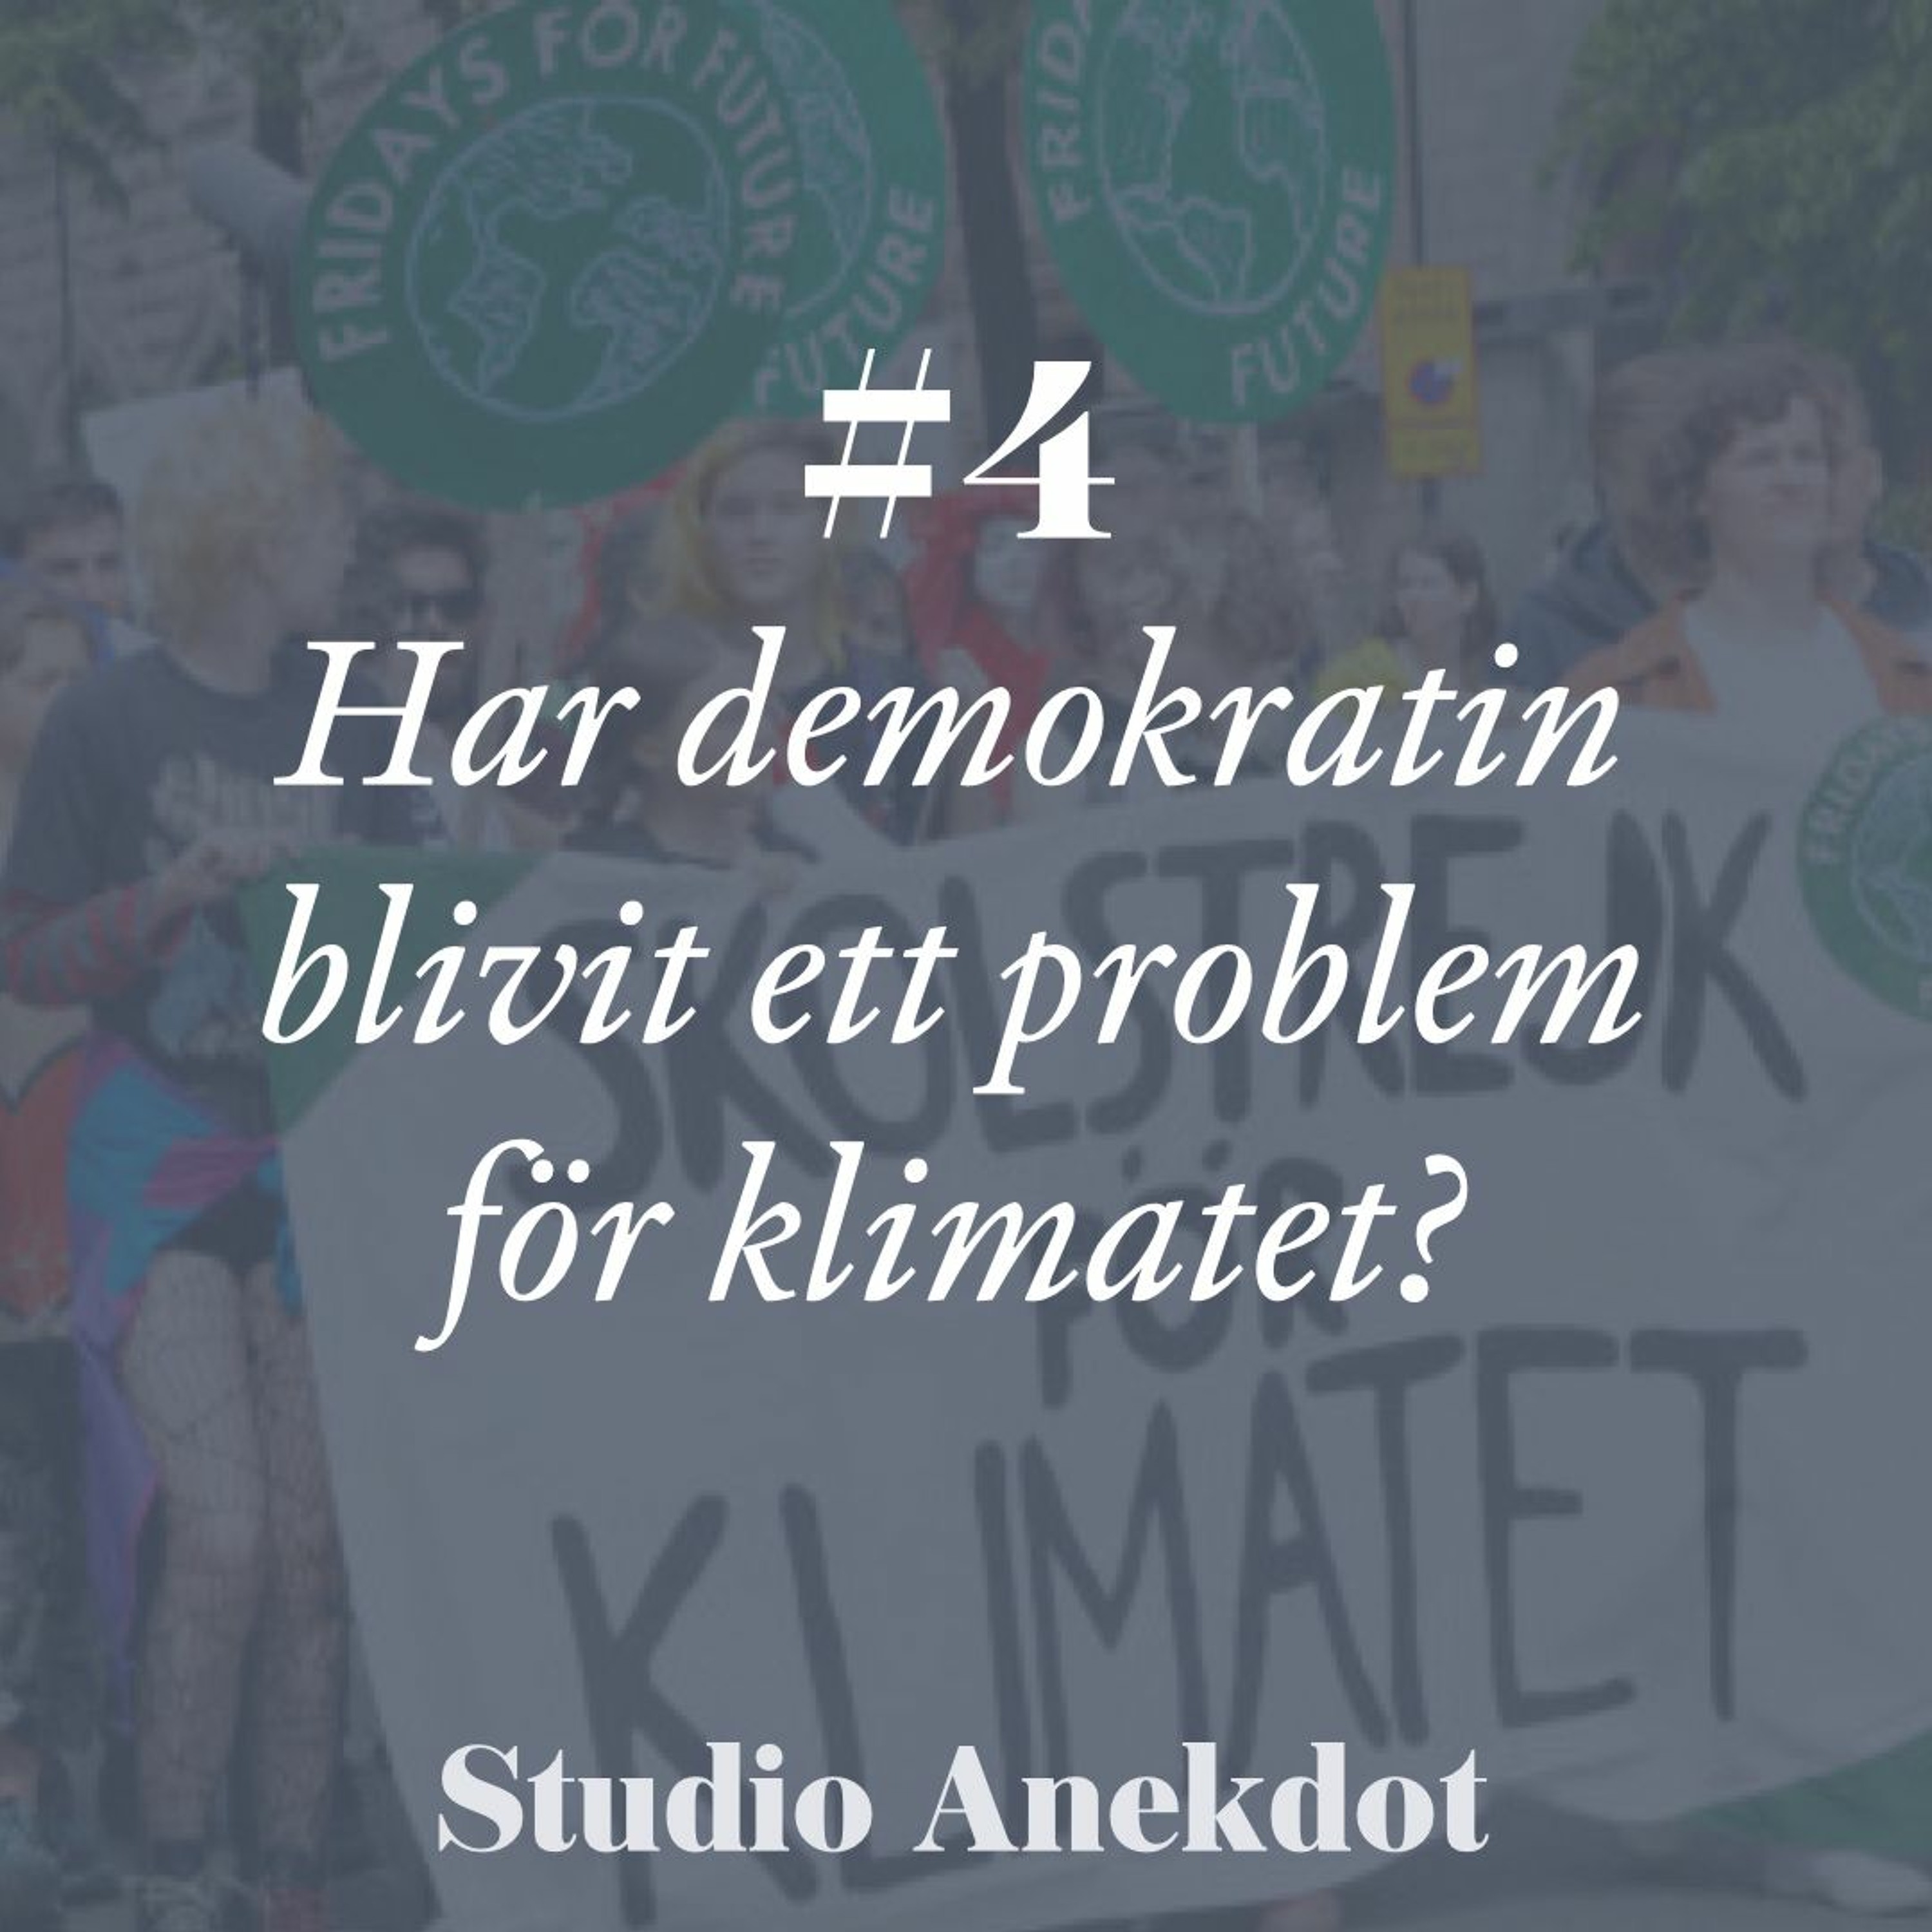 Studio Anekdot: Har demokratin blivit ett problem för klimatet?